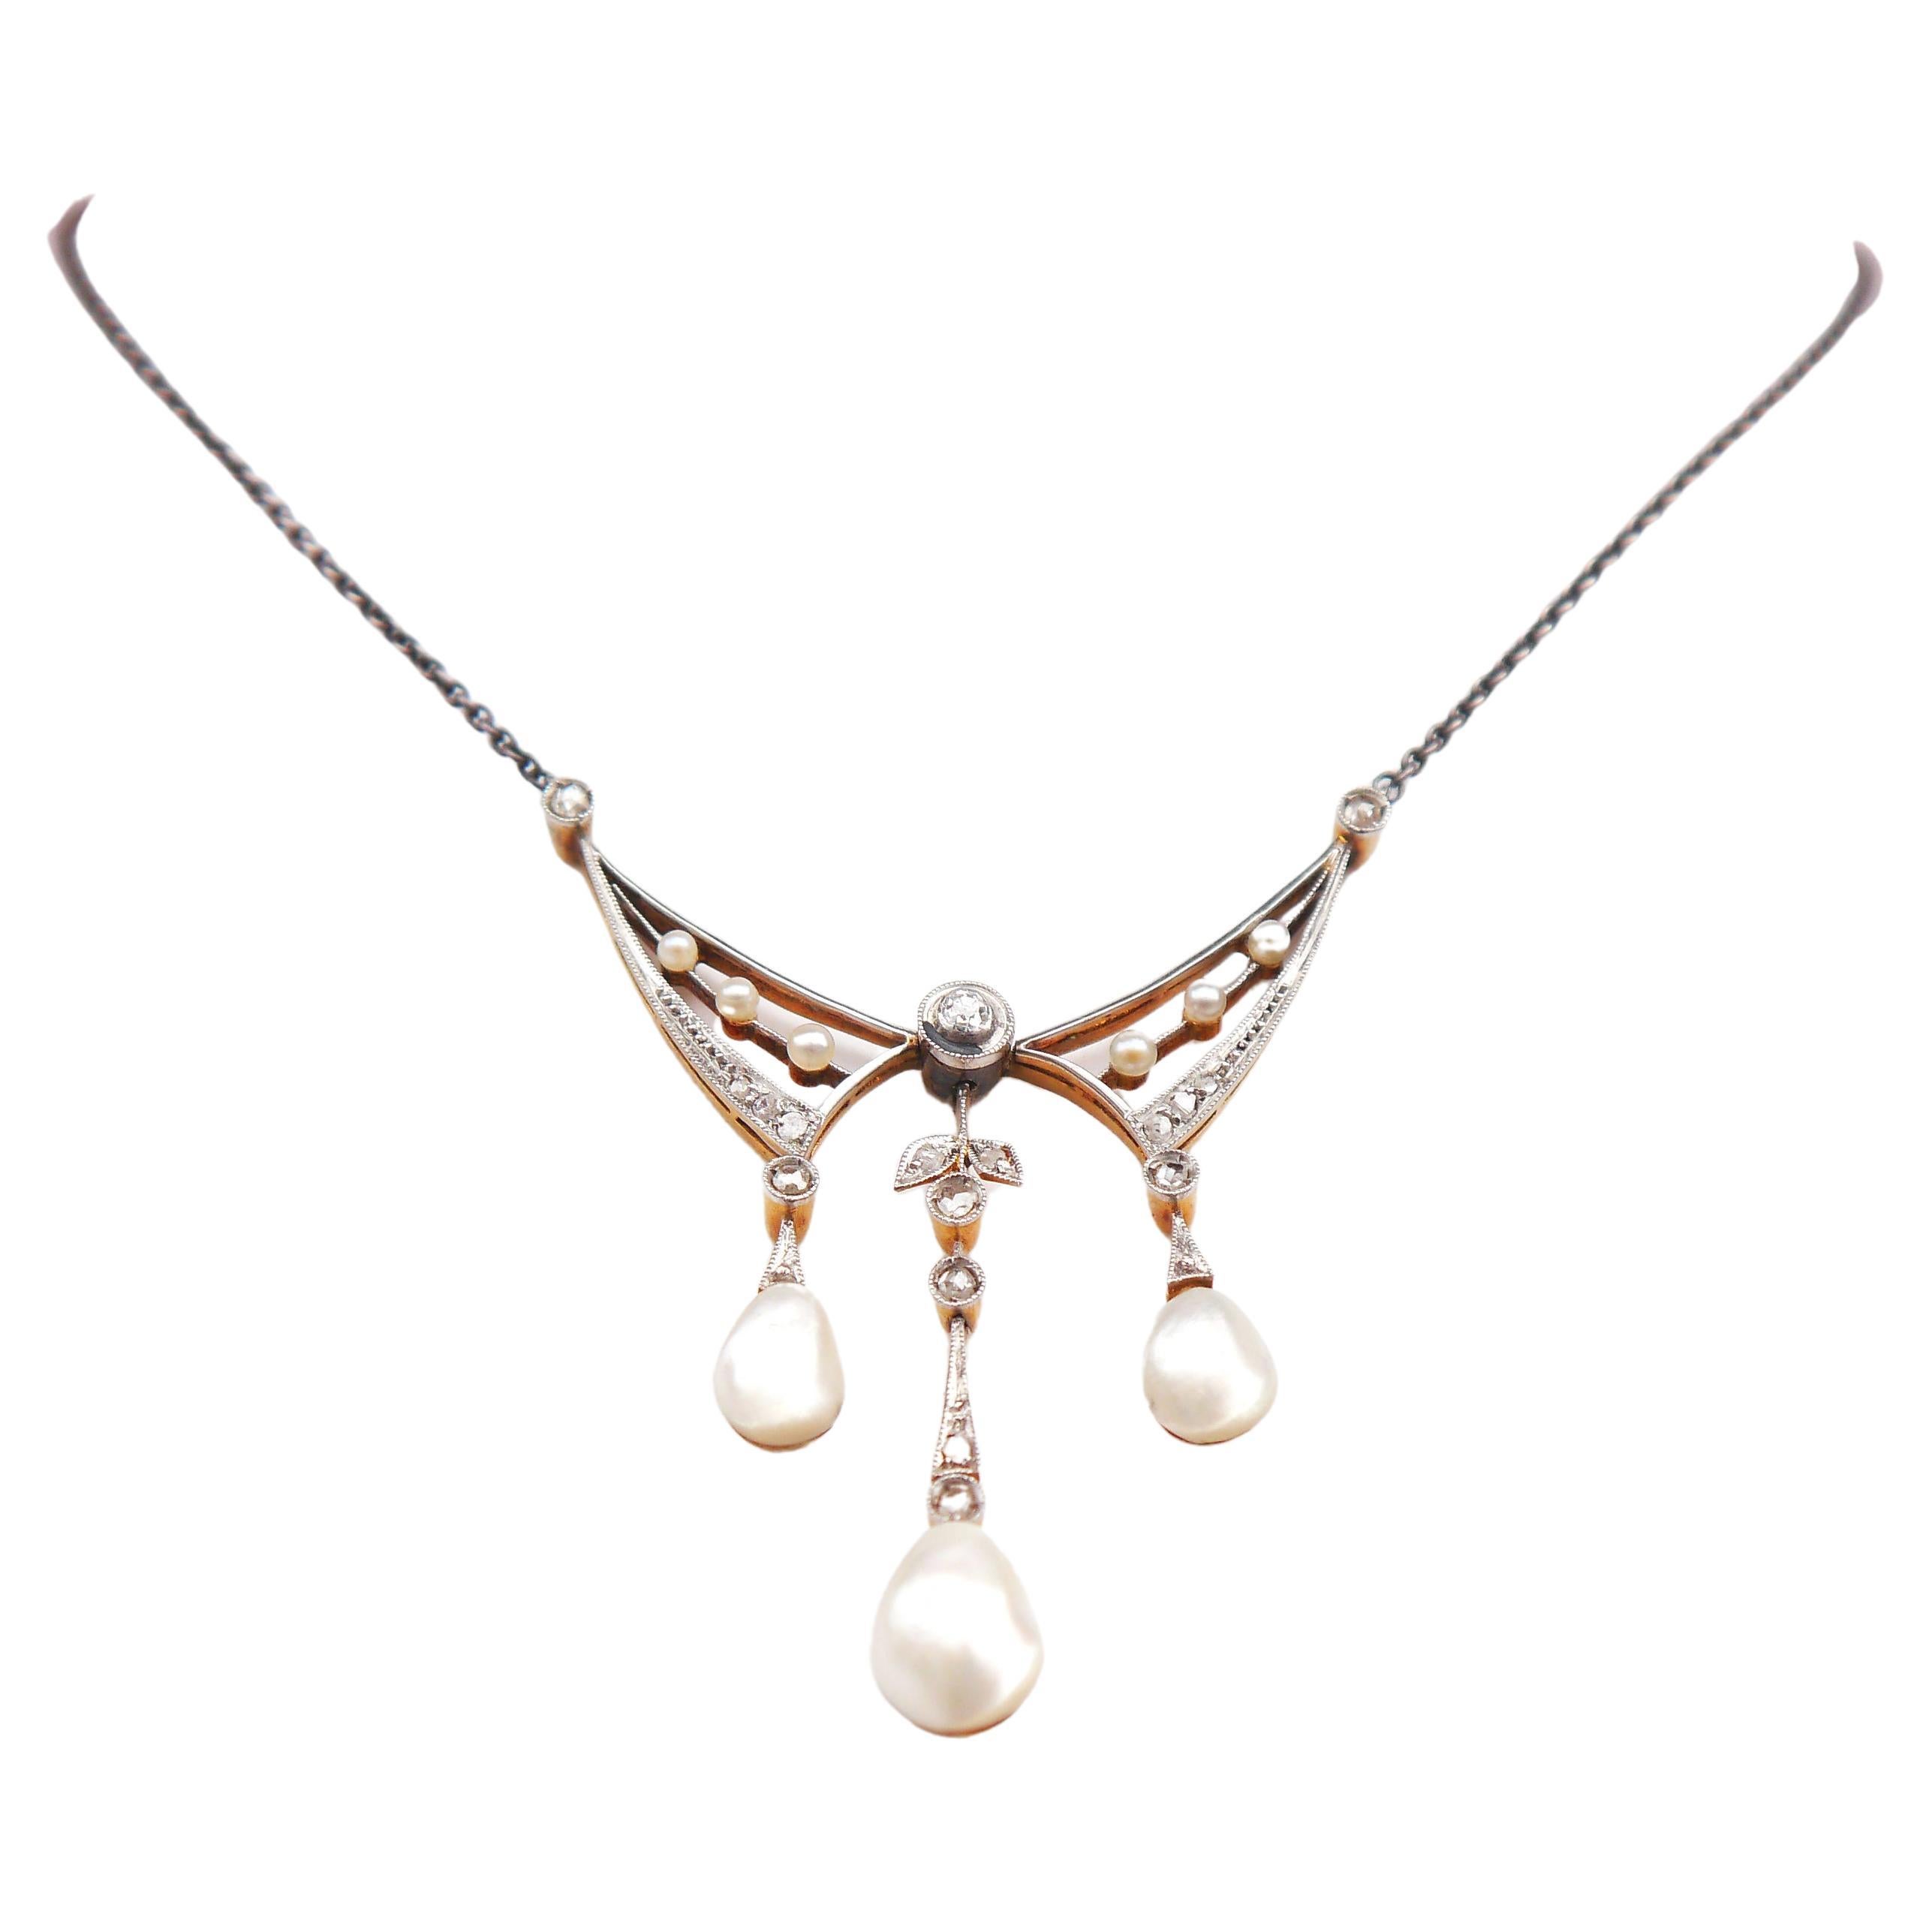 Antike Halskette natürliche Perlen Diamanten 18K Gold Platin Silber / 44cm/ 6.8 gr